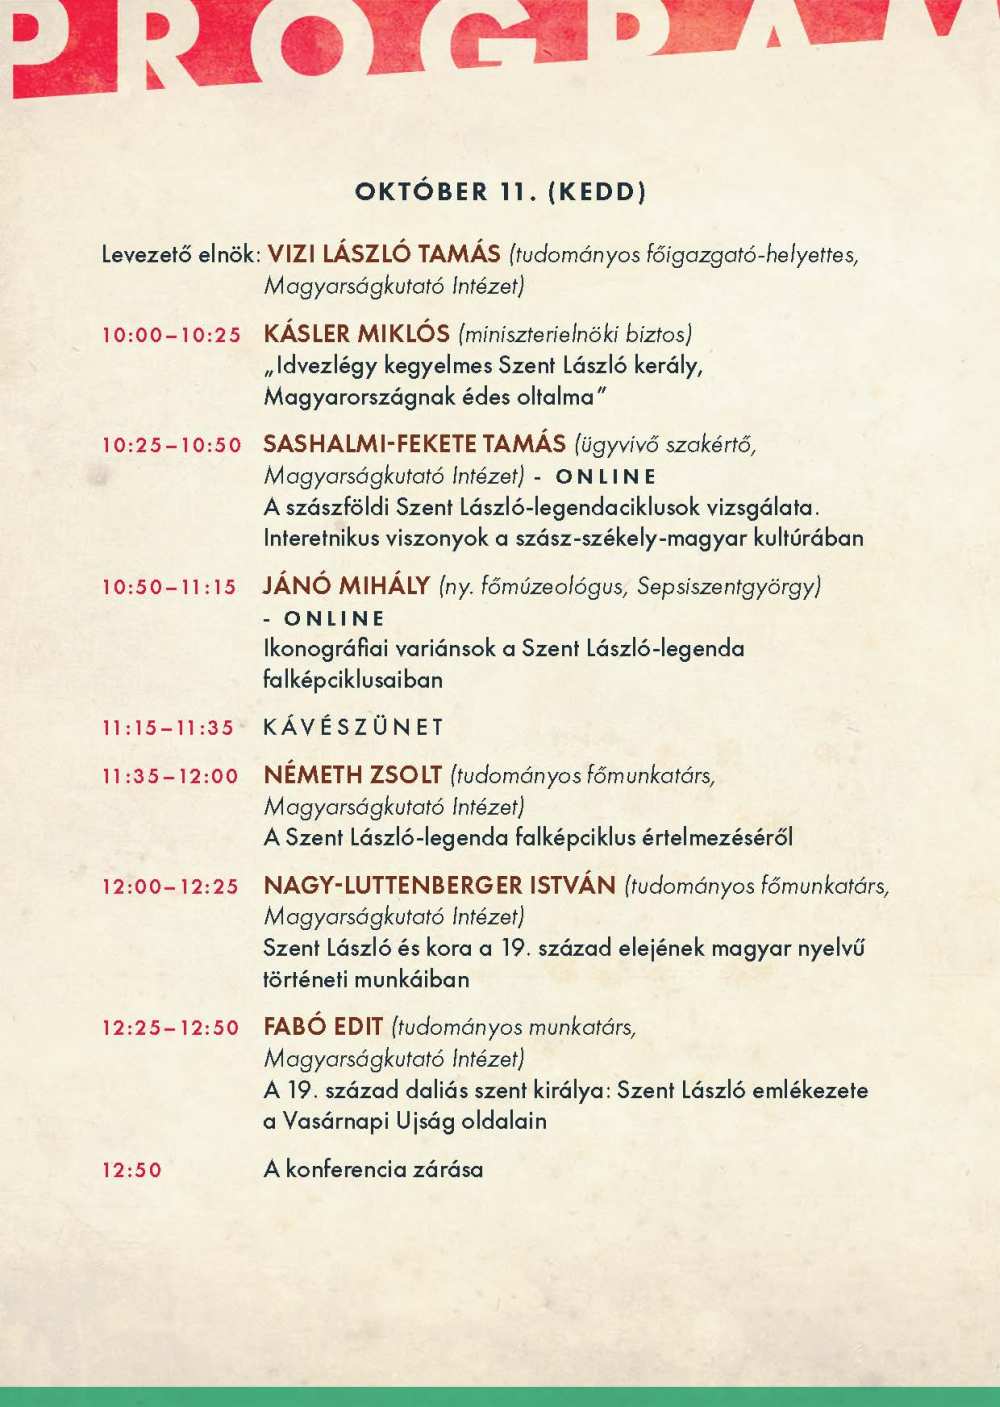 A Szent László király és öröksége című konferencia programja